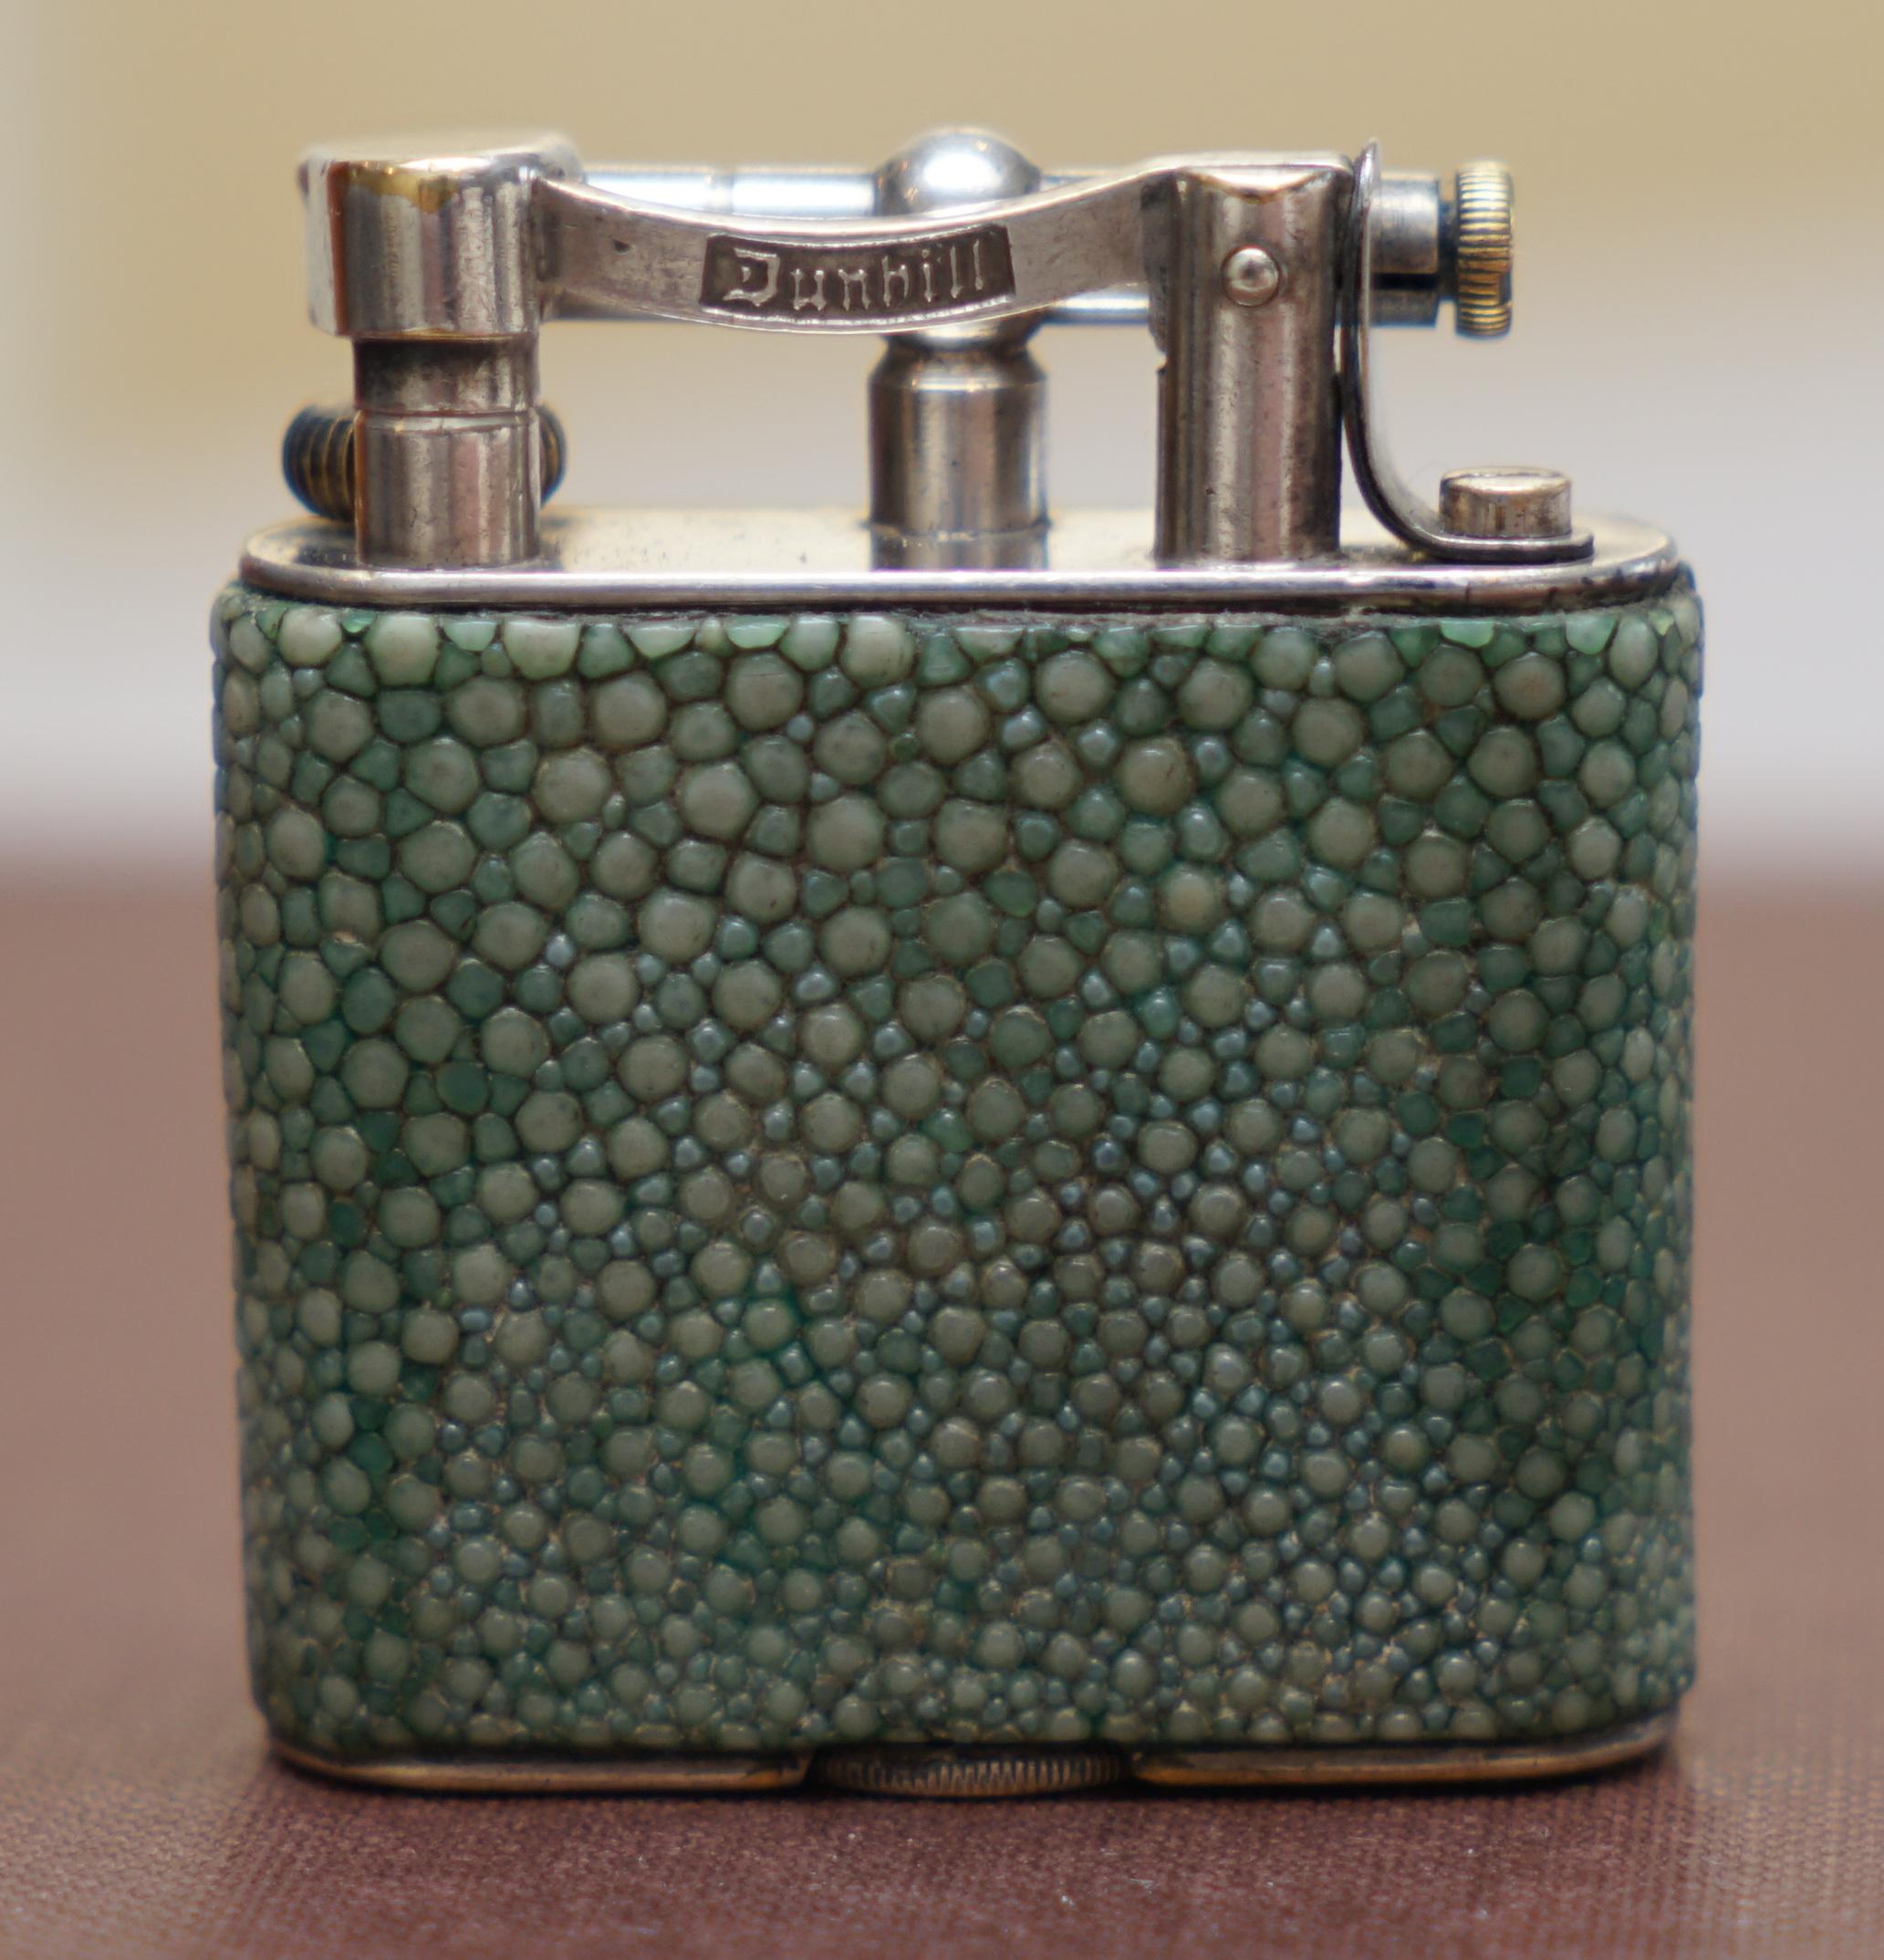 English Rare 1930s Dunhill Shagreen Lighter Pat No 390107 Made in England Art Deco Era